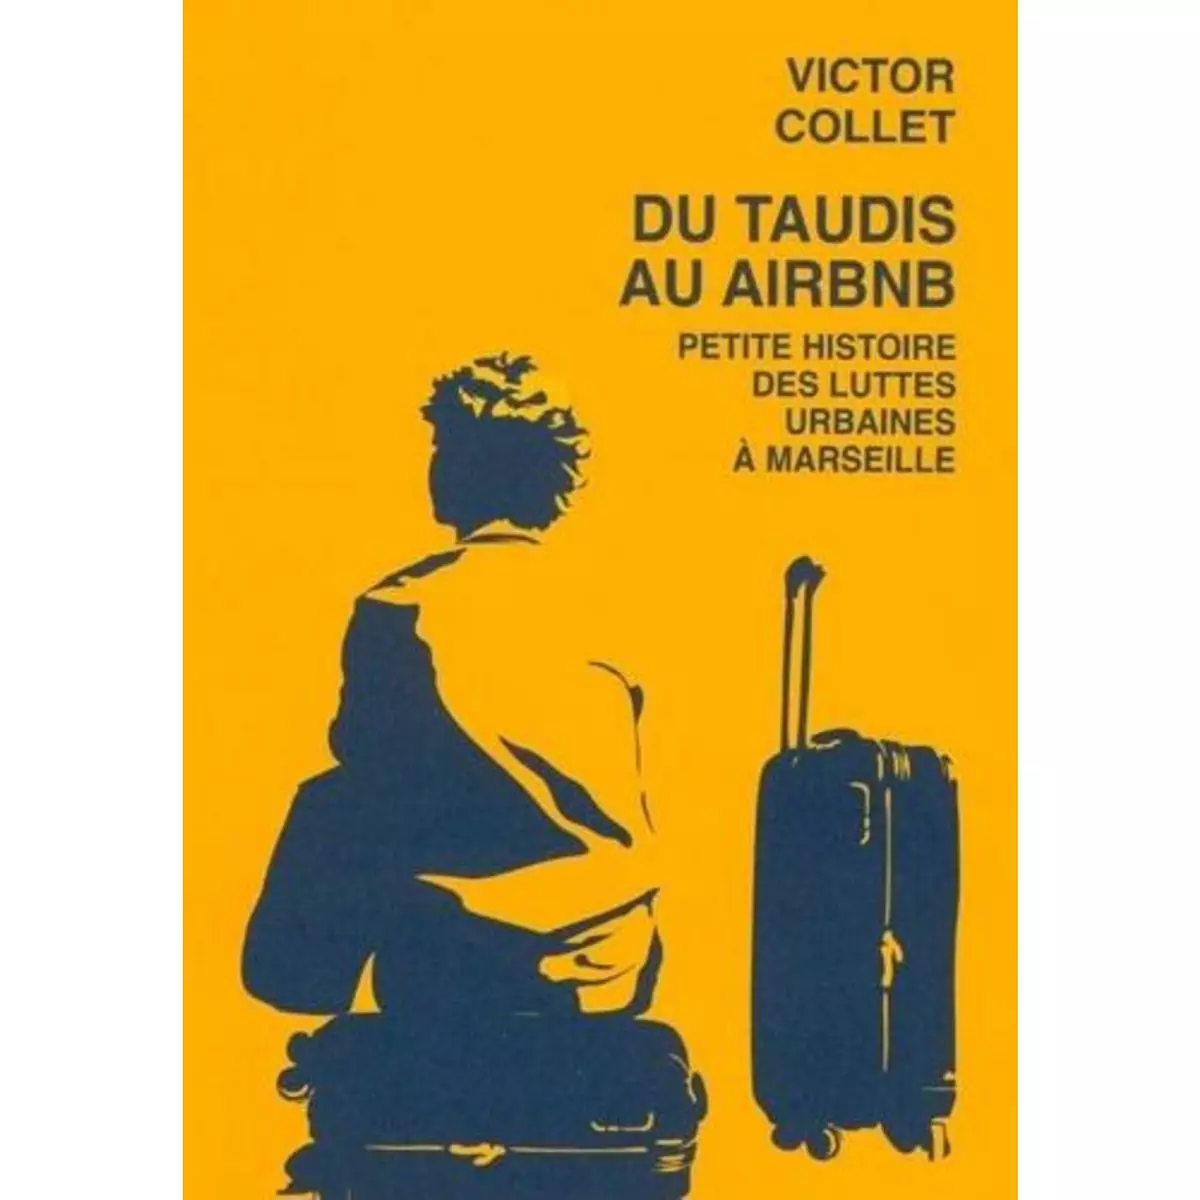  DU TAUDIS AU AIRBNB. PETITE HISTOIRE DES LUTTES URBAINES A MARSEILLE (2018-2023), Collet Victor